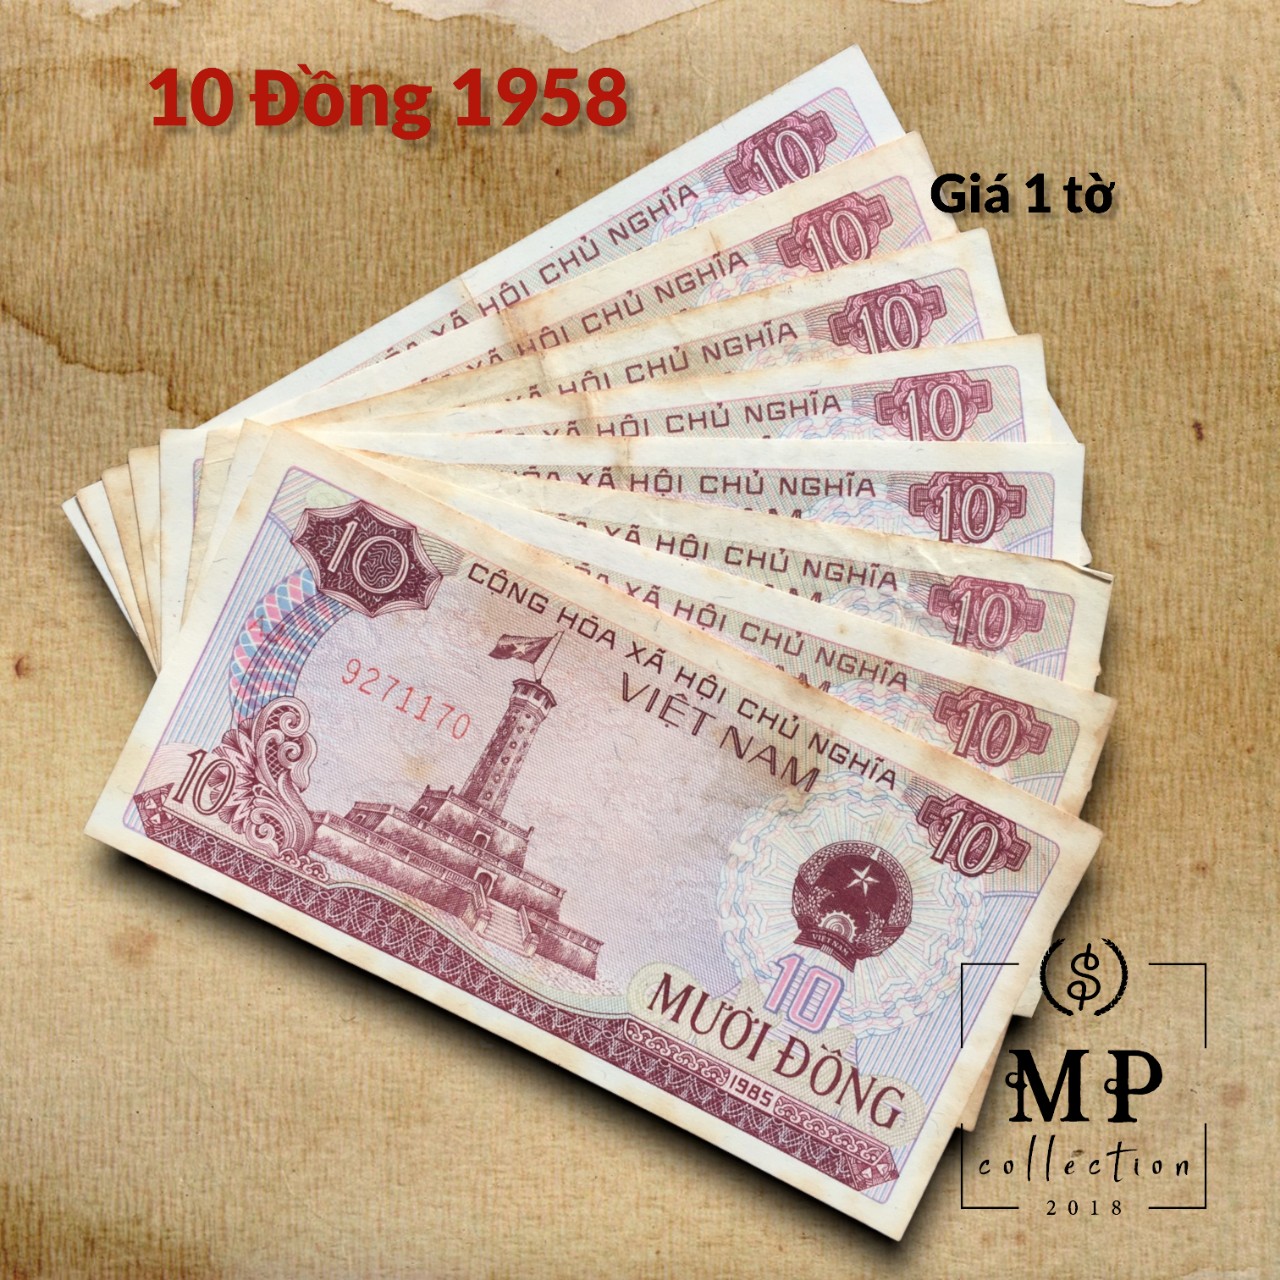 Tờ 10 đồng bao cấp 1985, tiền xưa thời bao cấp sưu tầm.